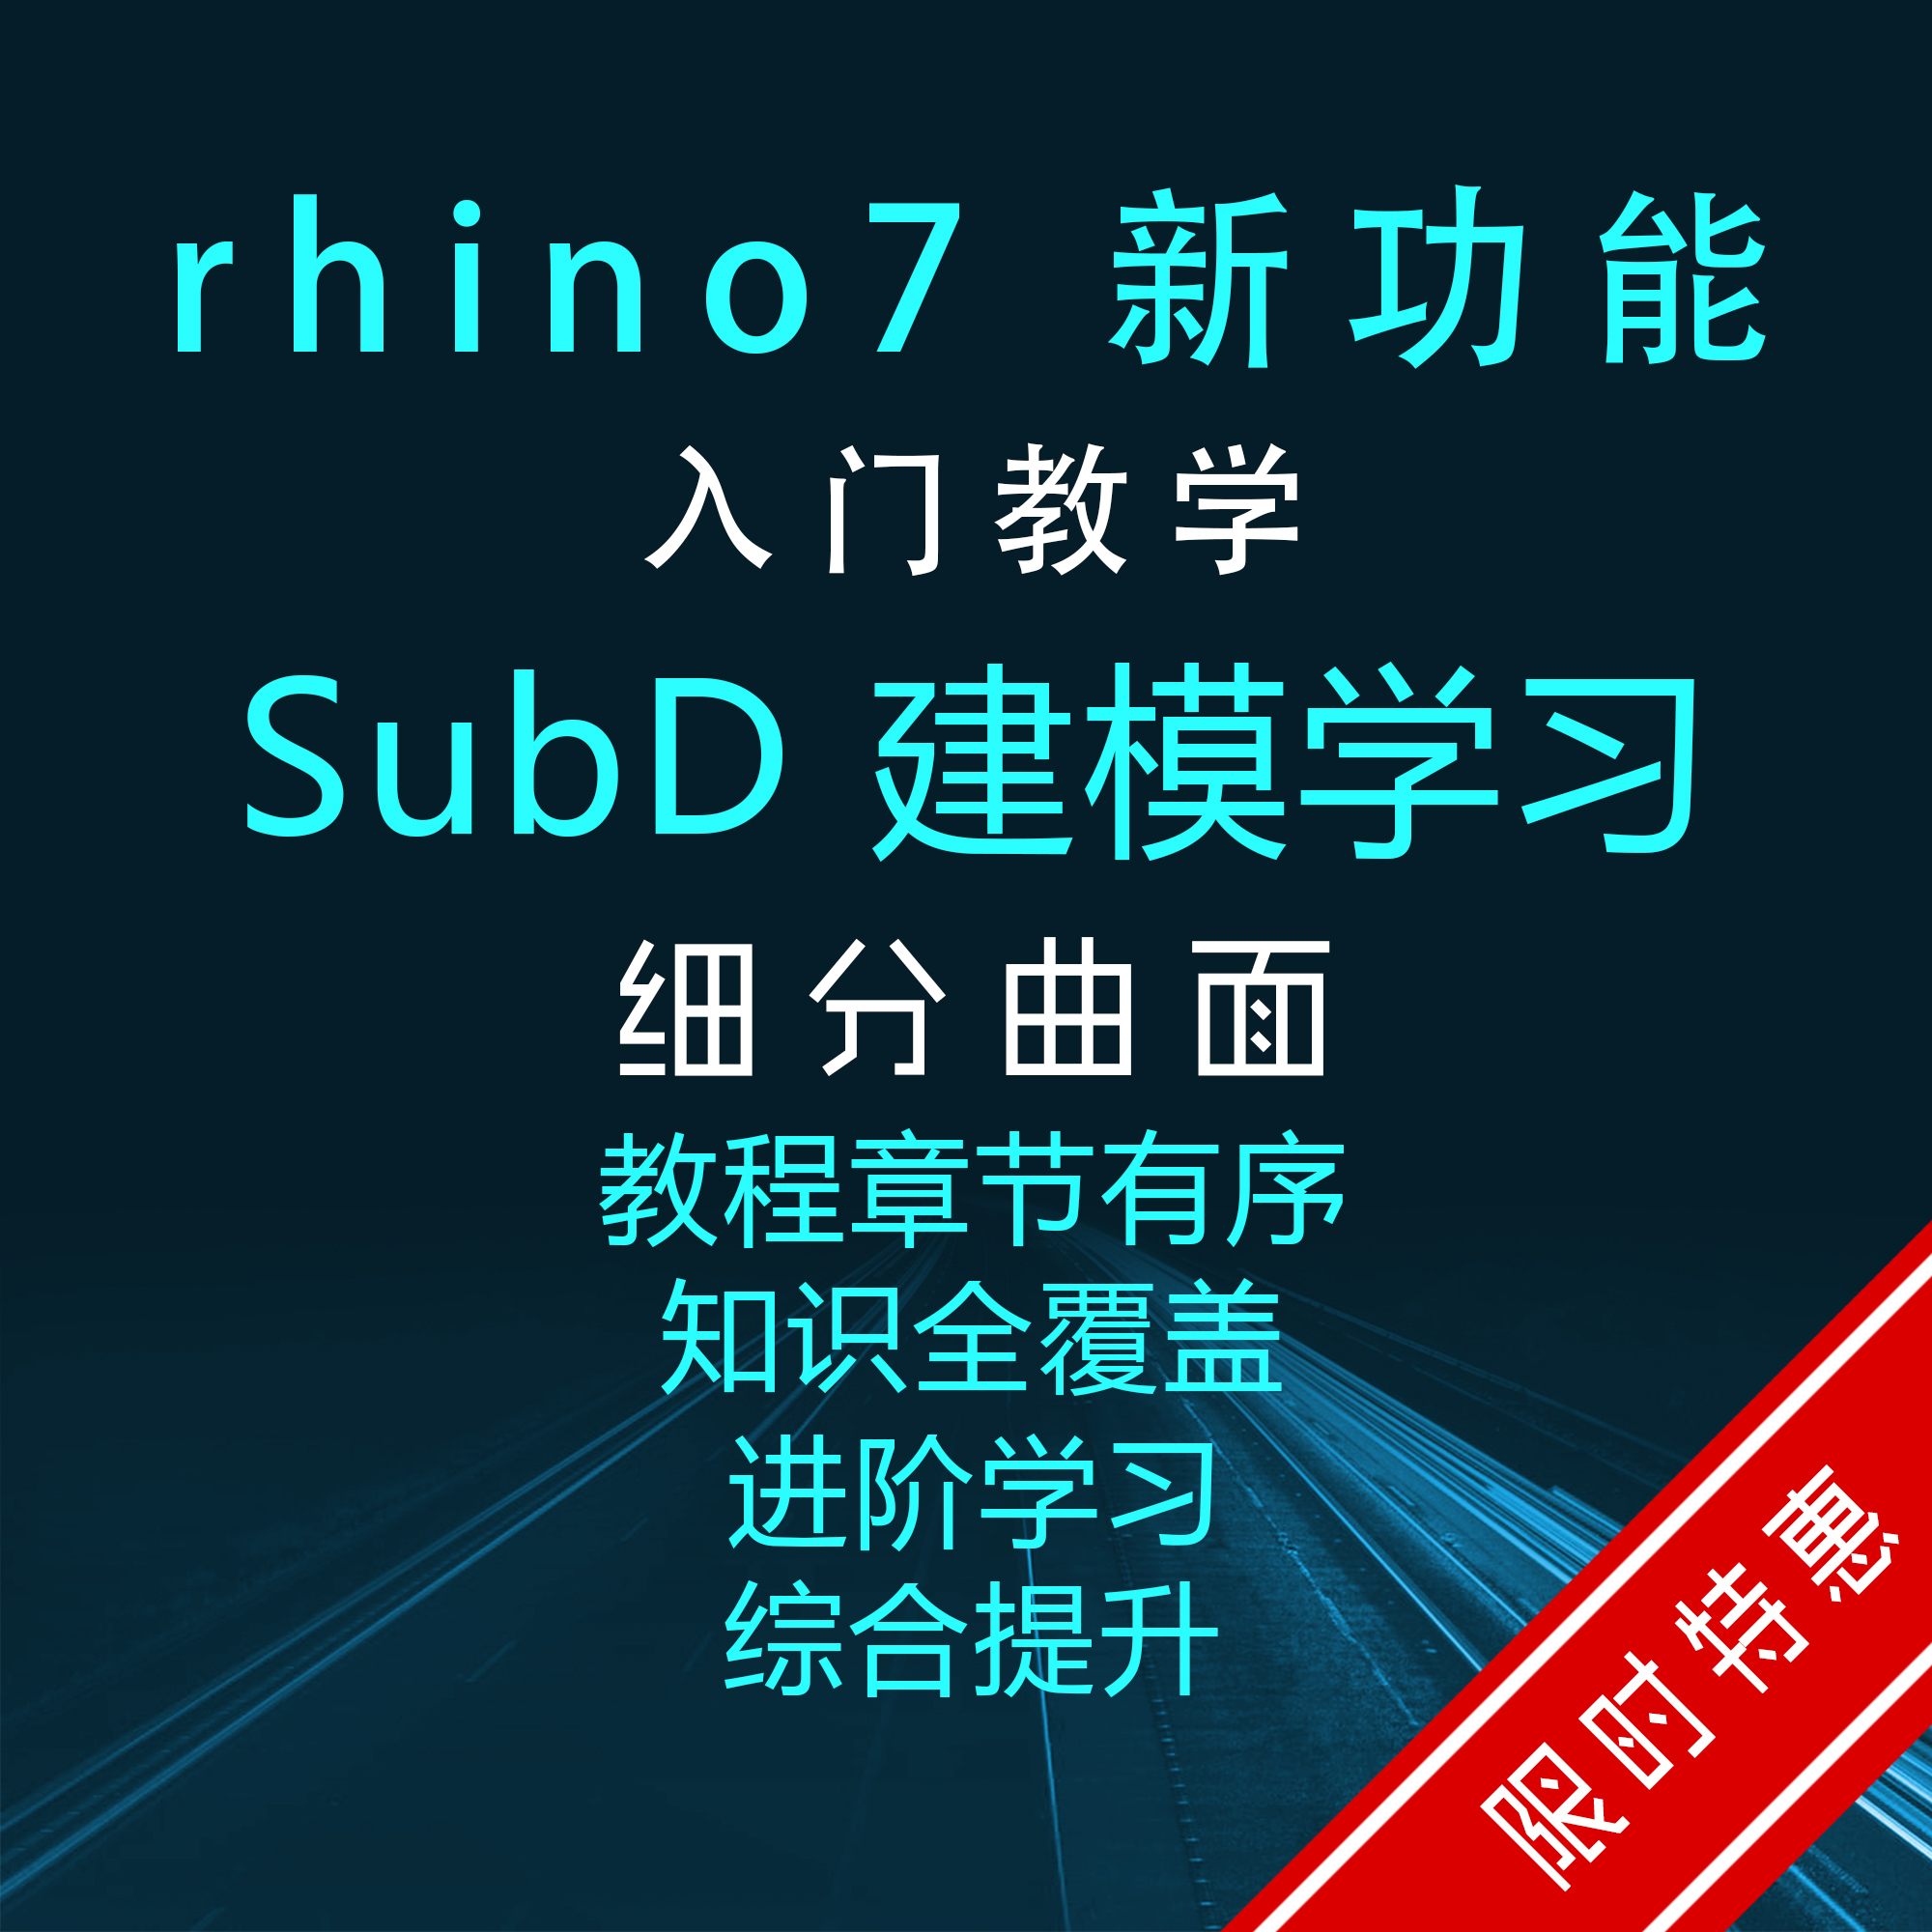 【上新】高清犀牛教程视频Rhino7SubD细分曲面建模教学案例